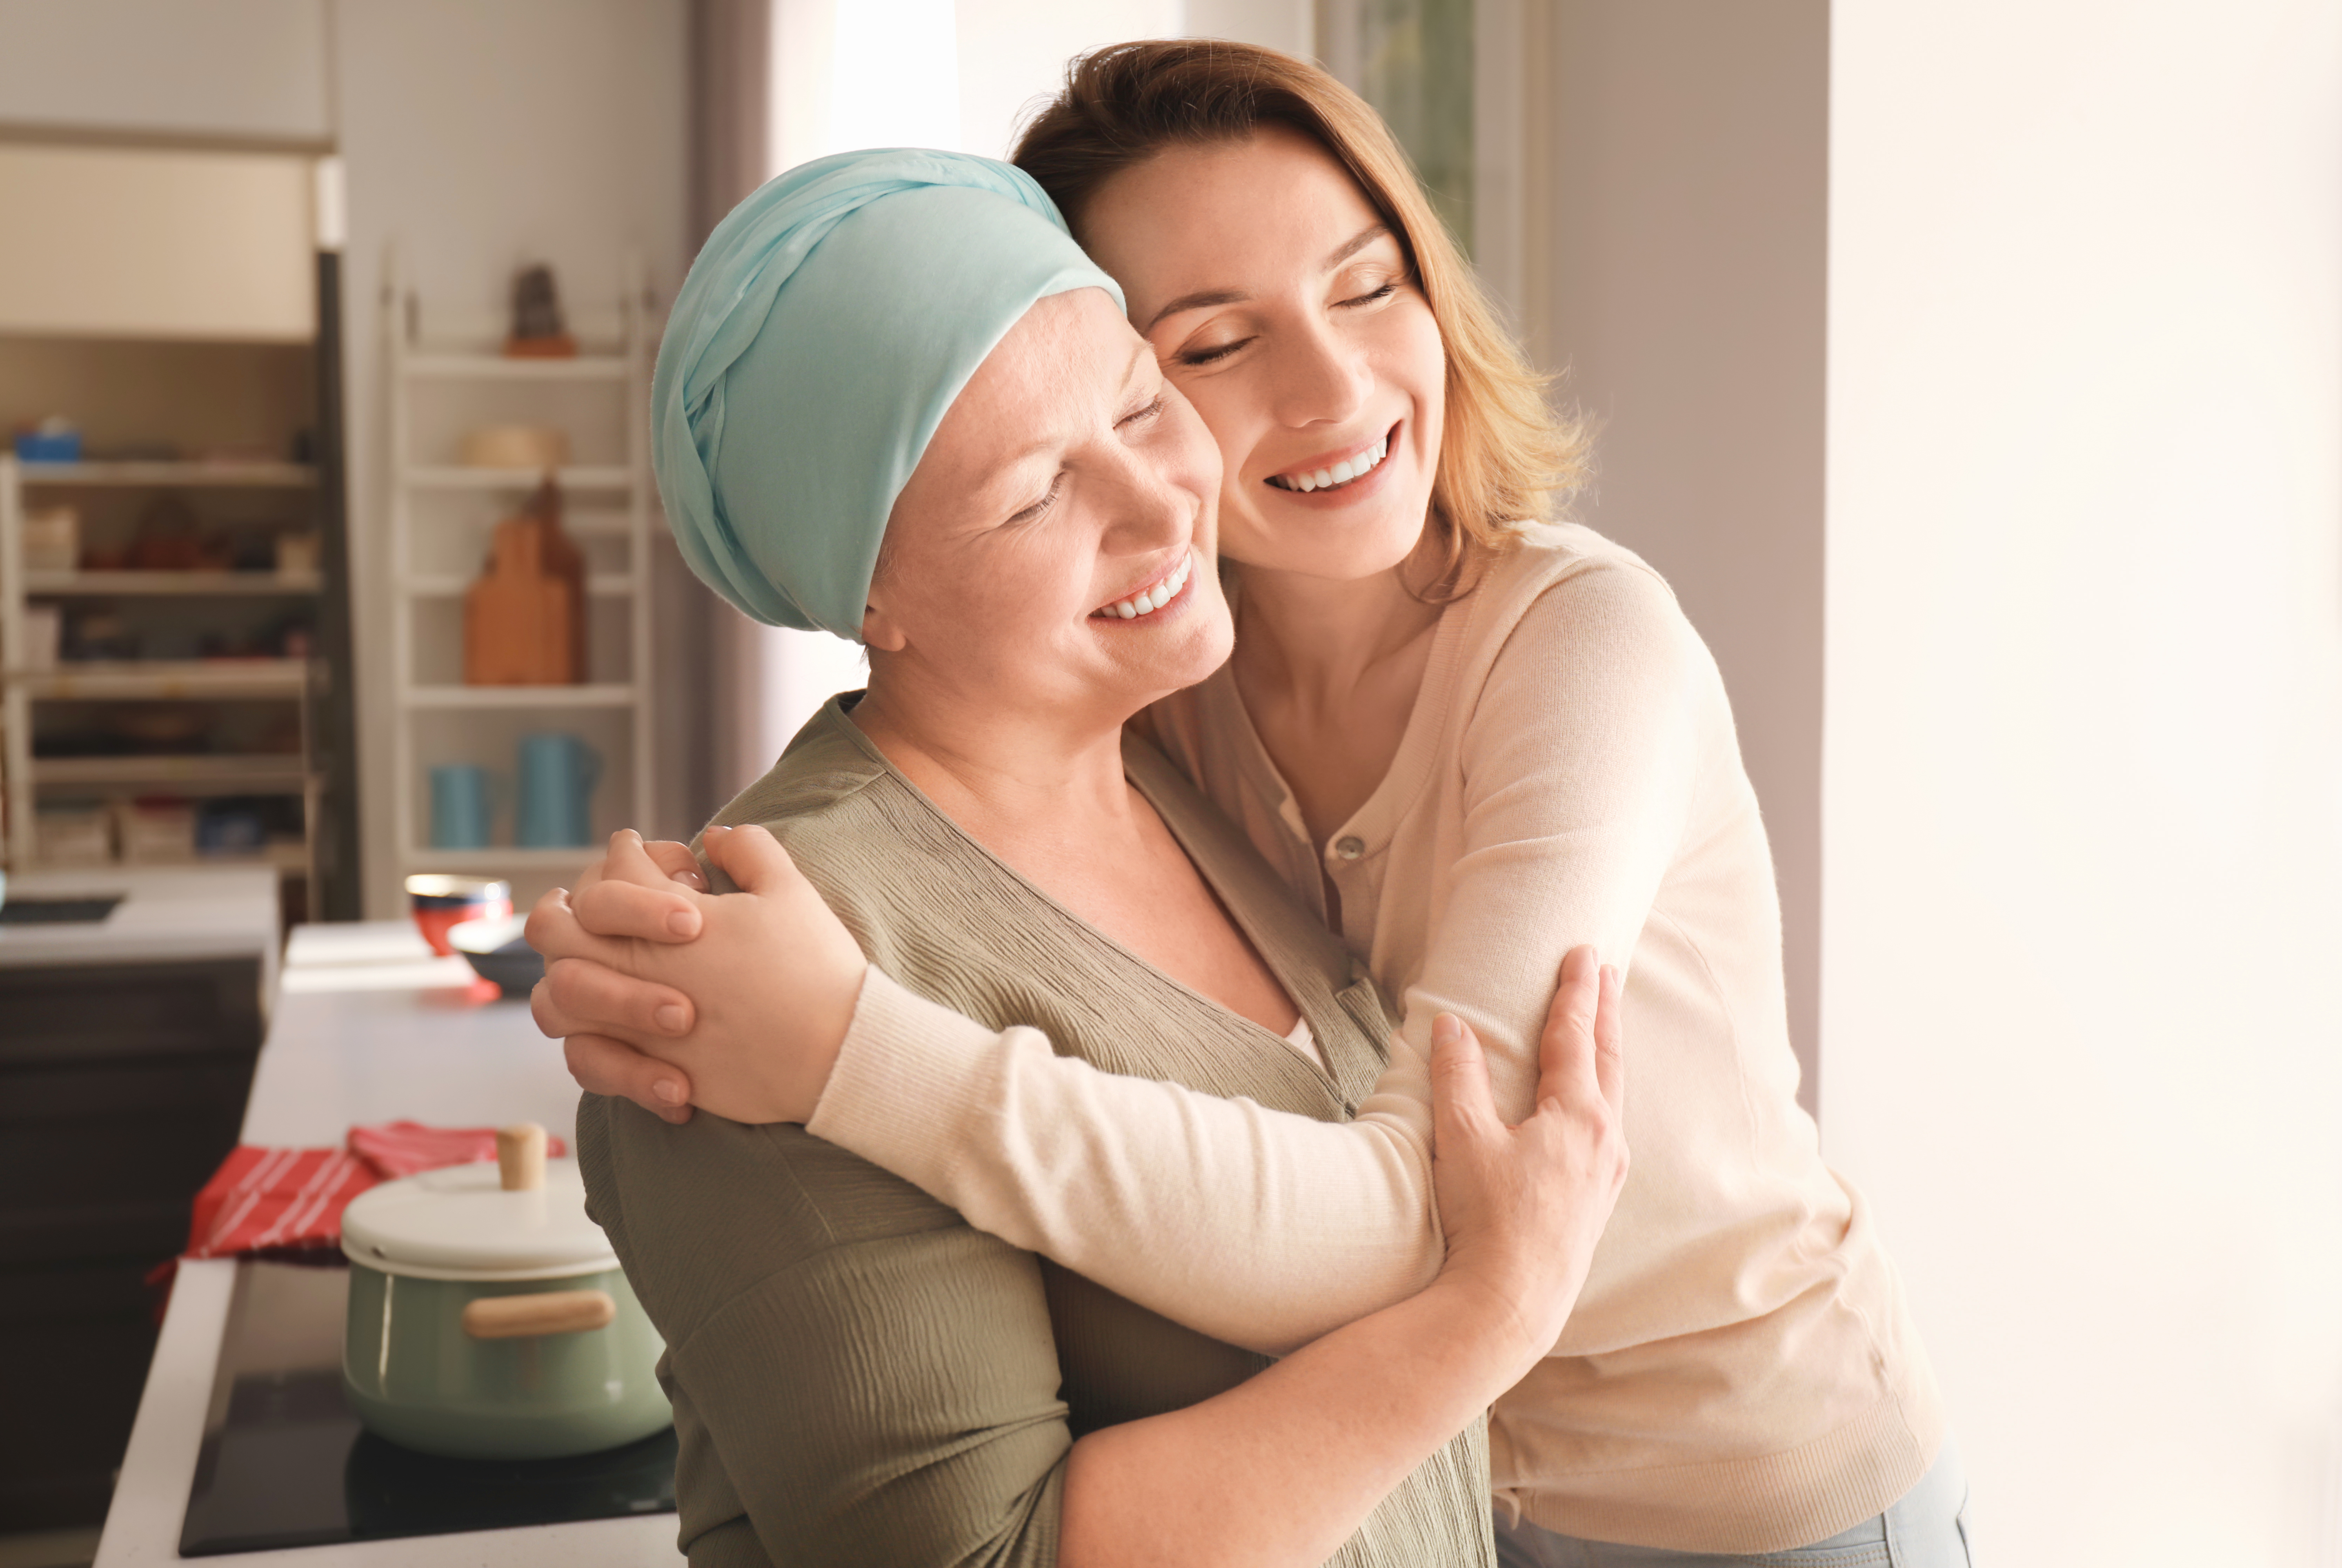 Olnīcu vēzis – bīstams un bieži nemanāms. Kā sevi pasargāt?